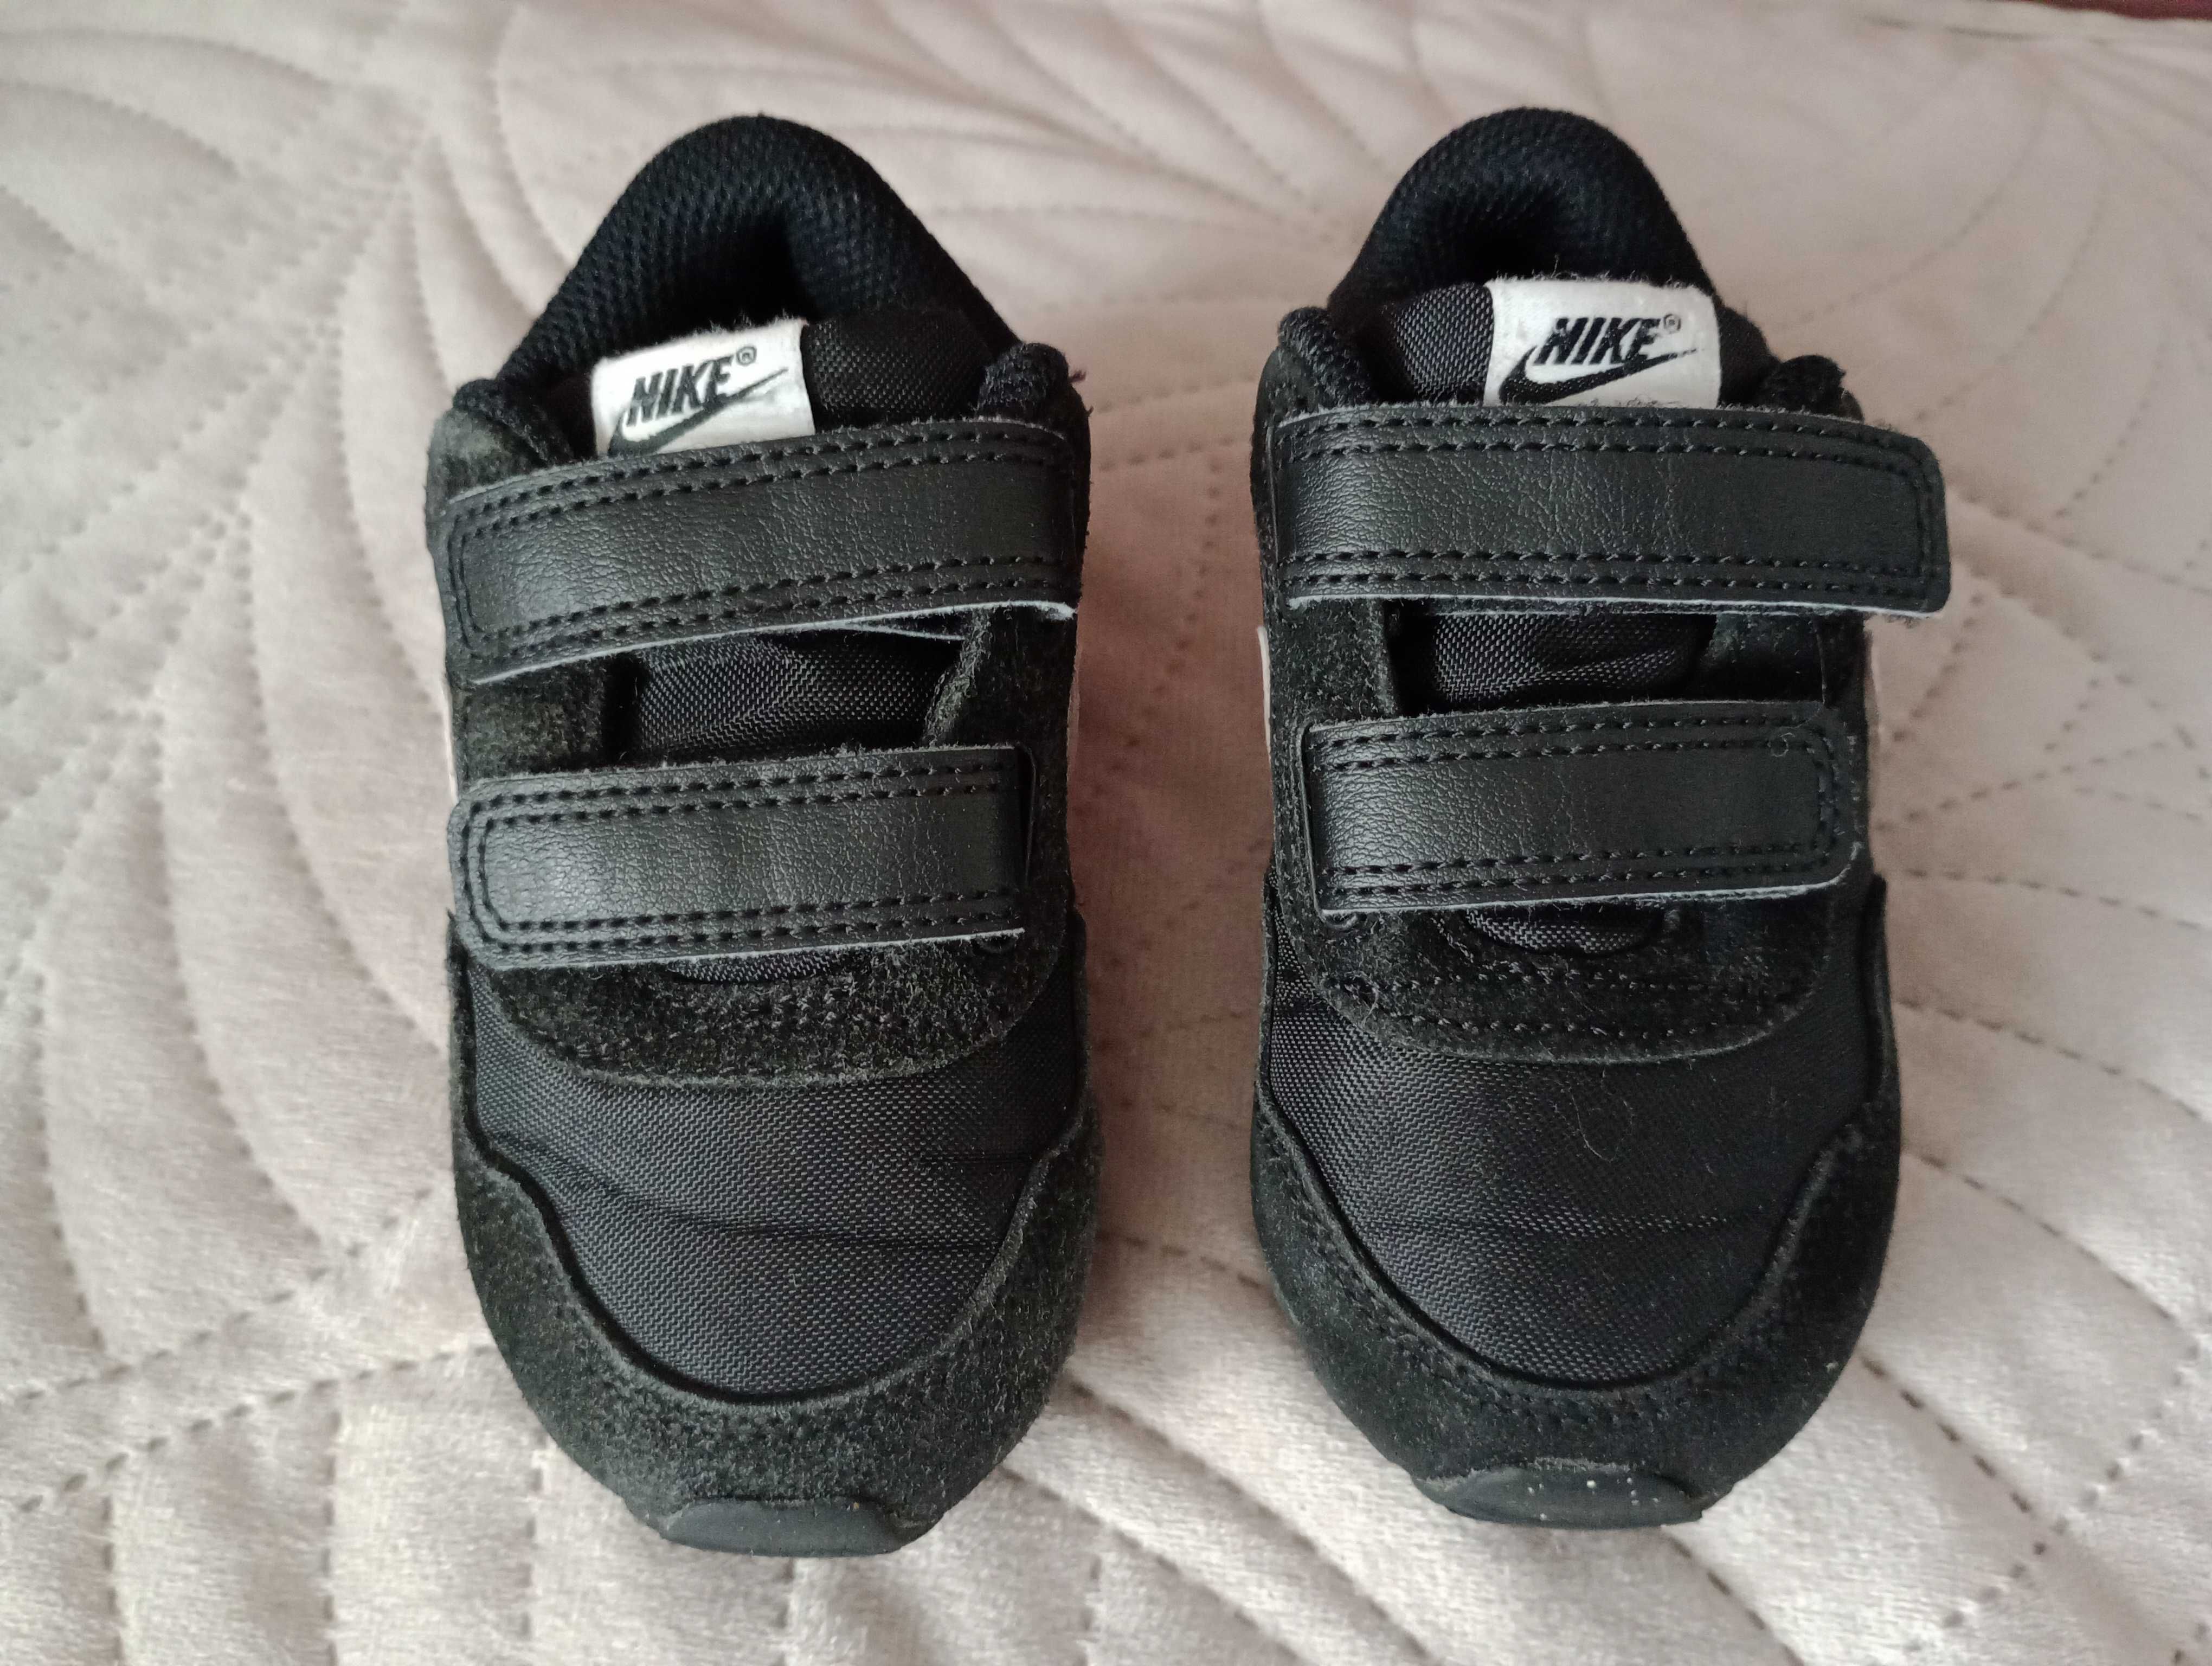 Buty sportowe chłopięce 22 Nike wkładka 14cm buty na rzepy